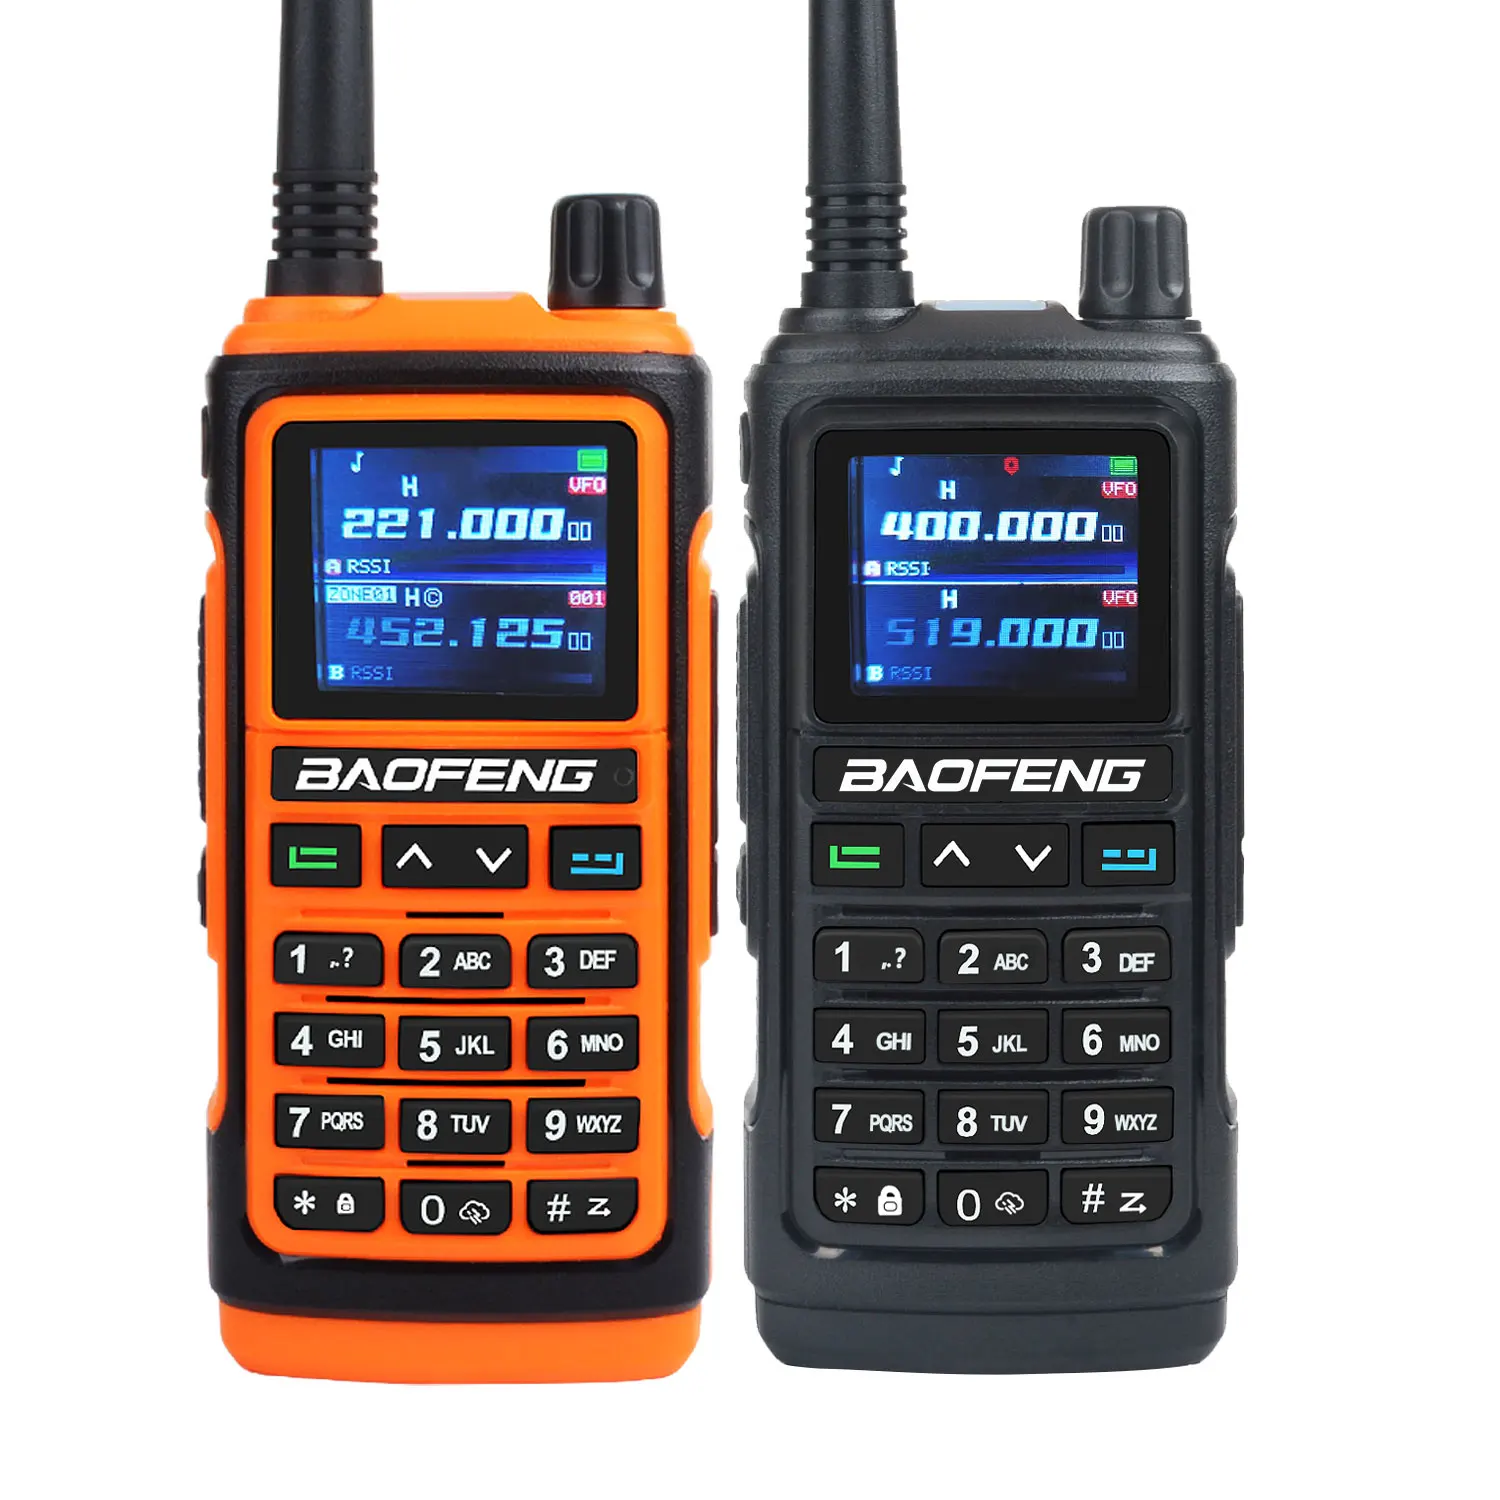 

Портативная рация Baofeng, 108-130 МГц, VHF UHF 200-260 МГц 350-355 МГц, FM-радио, шесть диапазонов, функция бесплатной копии, водонепроницаемая